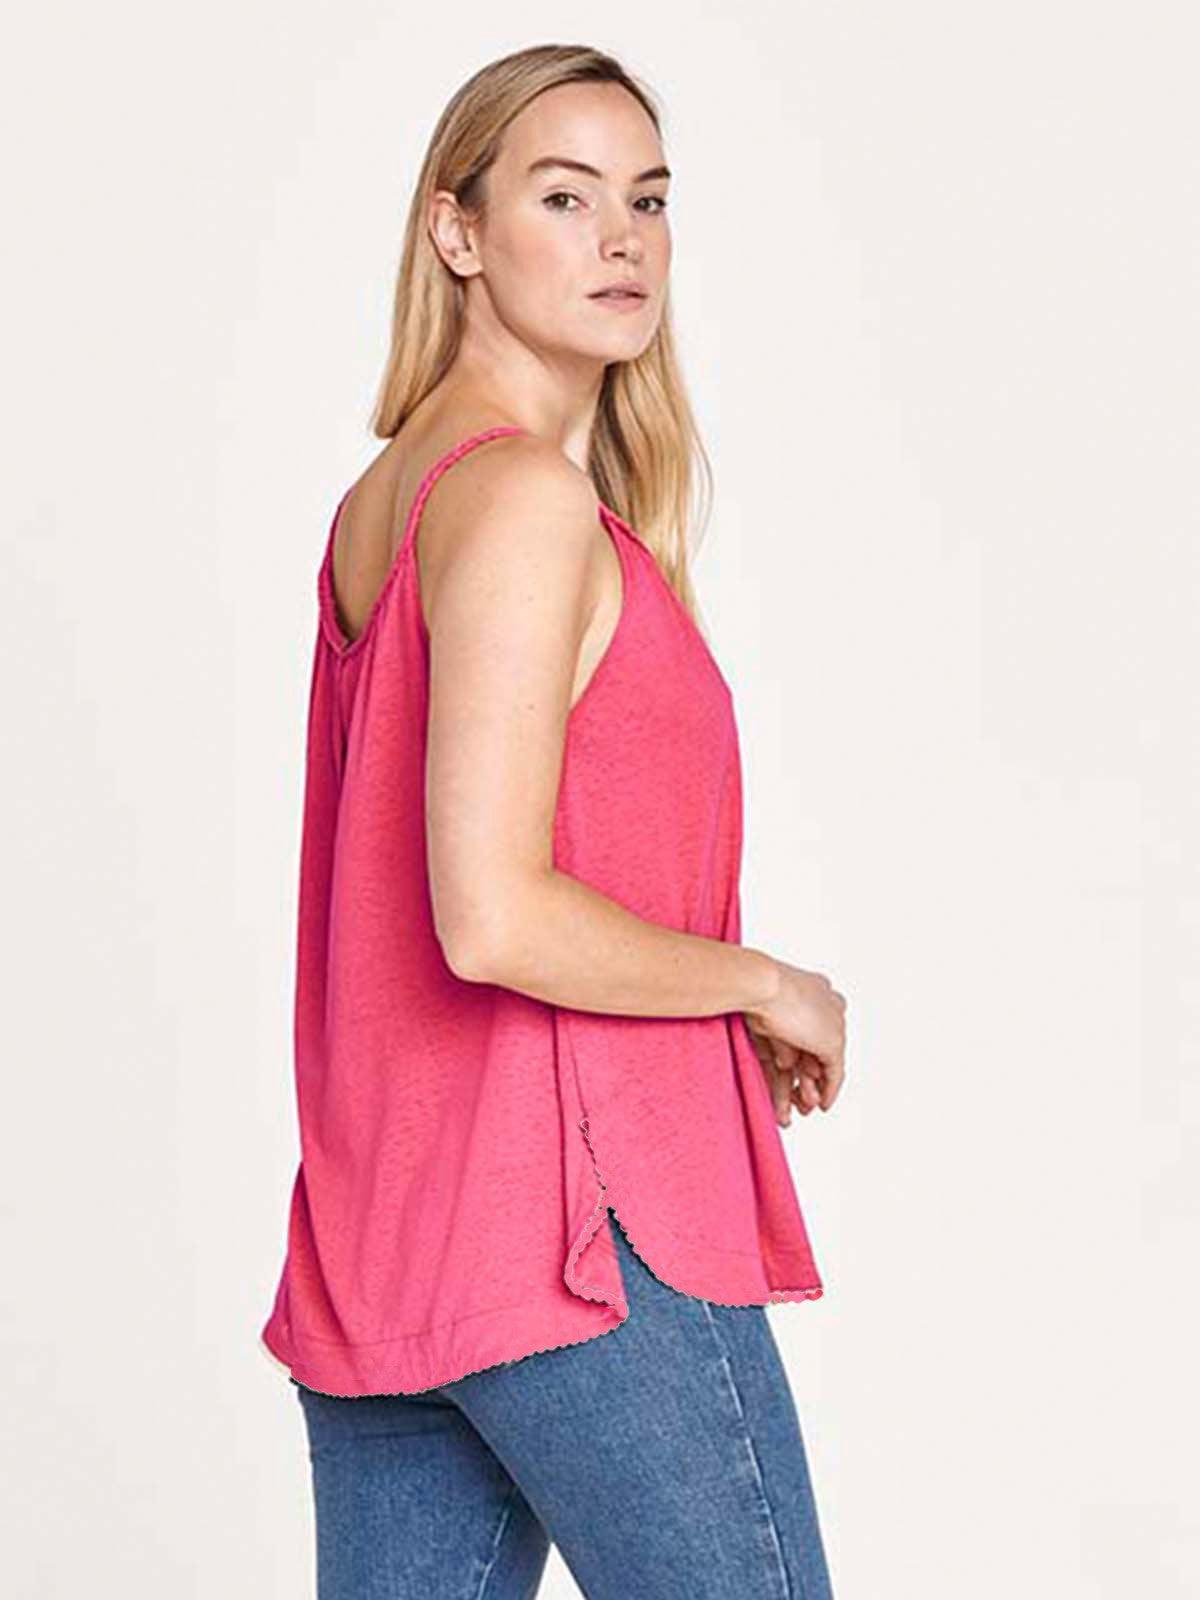 Caelan Hemp Cami Top- Rose Pink - Thought Clothing UK